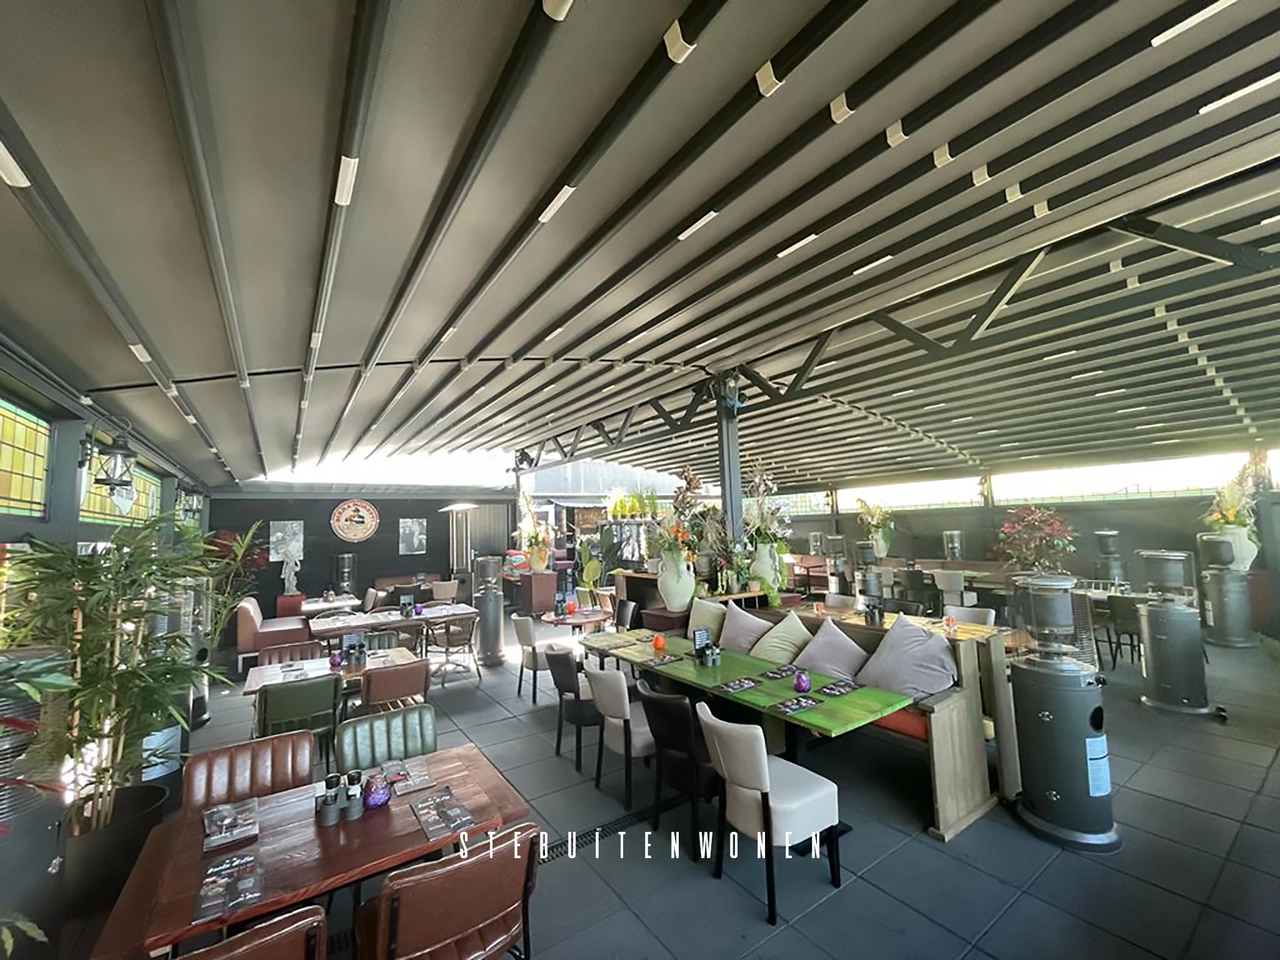 Het buitenterras van Restaurant Isolabella op Texel, met een prachtige doekoverkapping die het hele jaar door comfortabele dinermogelijkheden biedt.